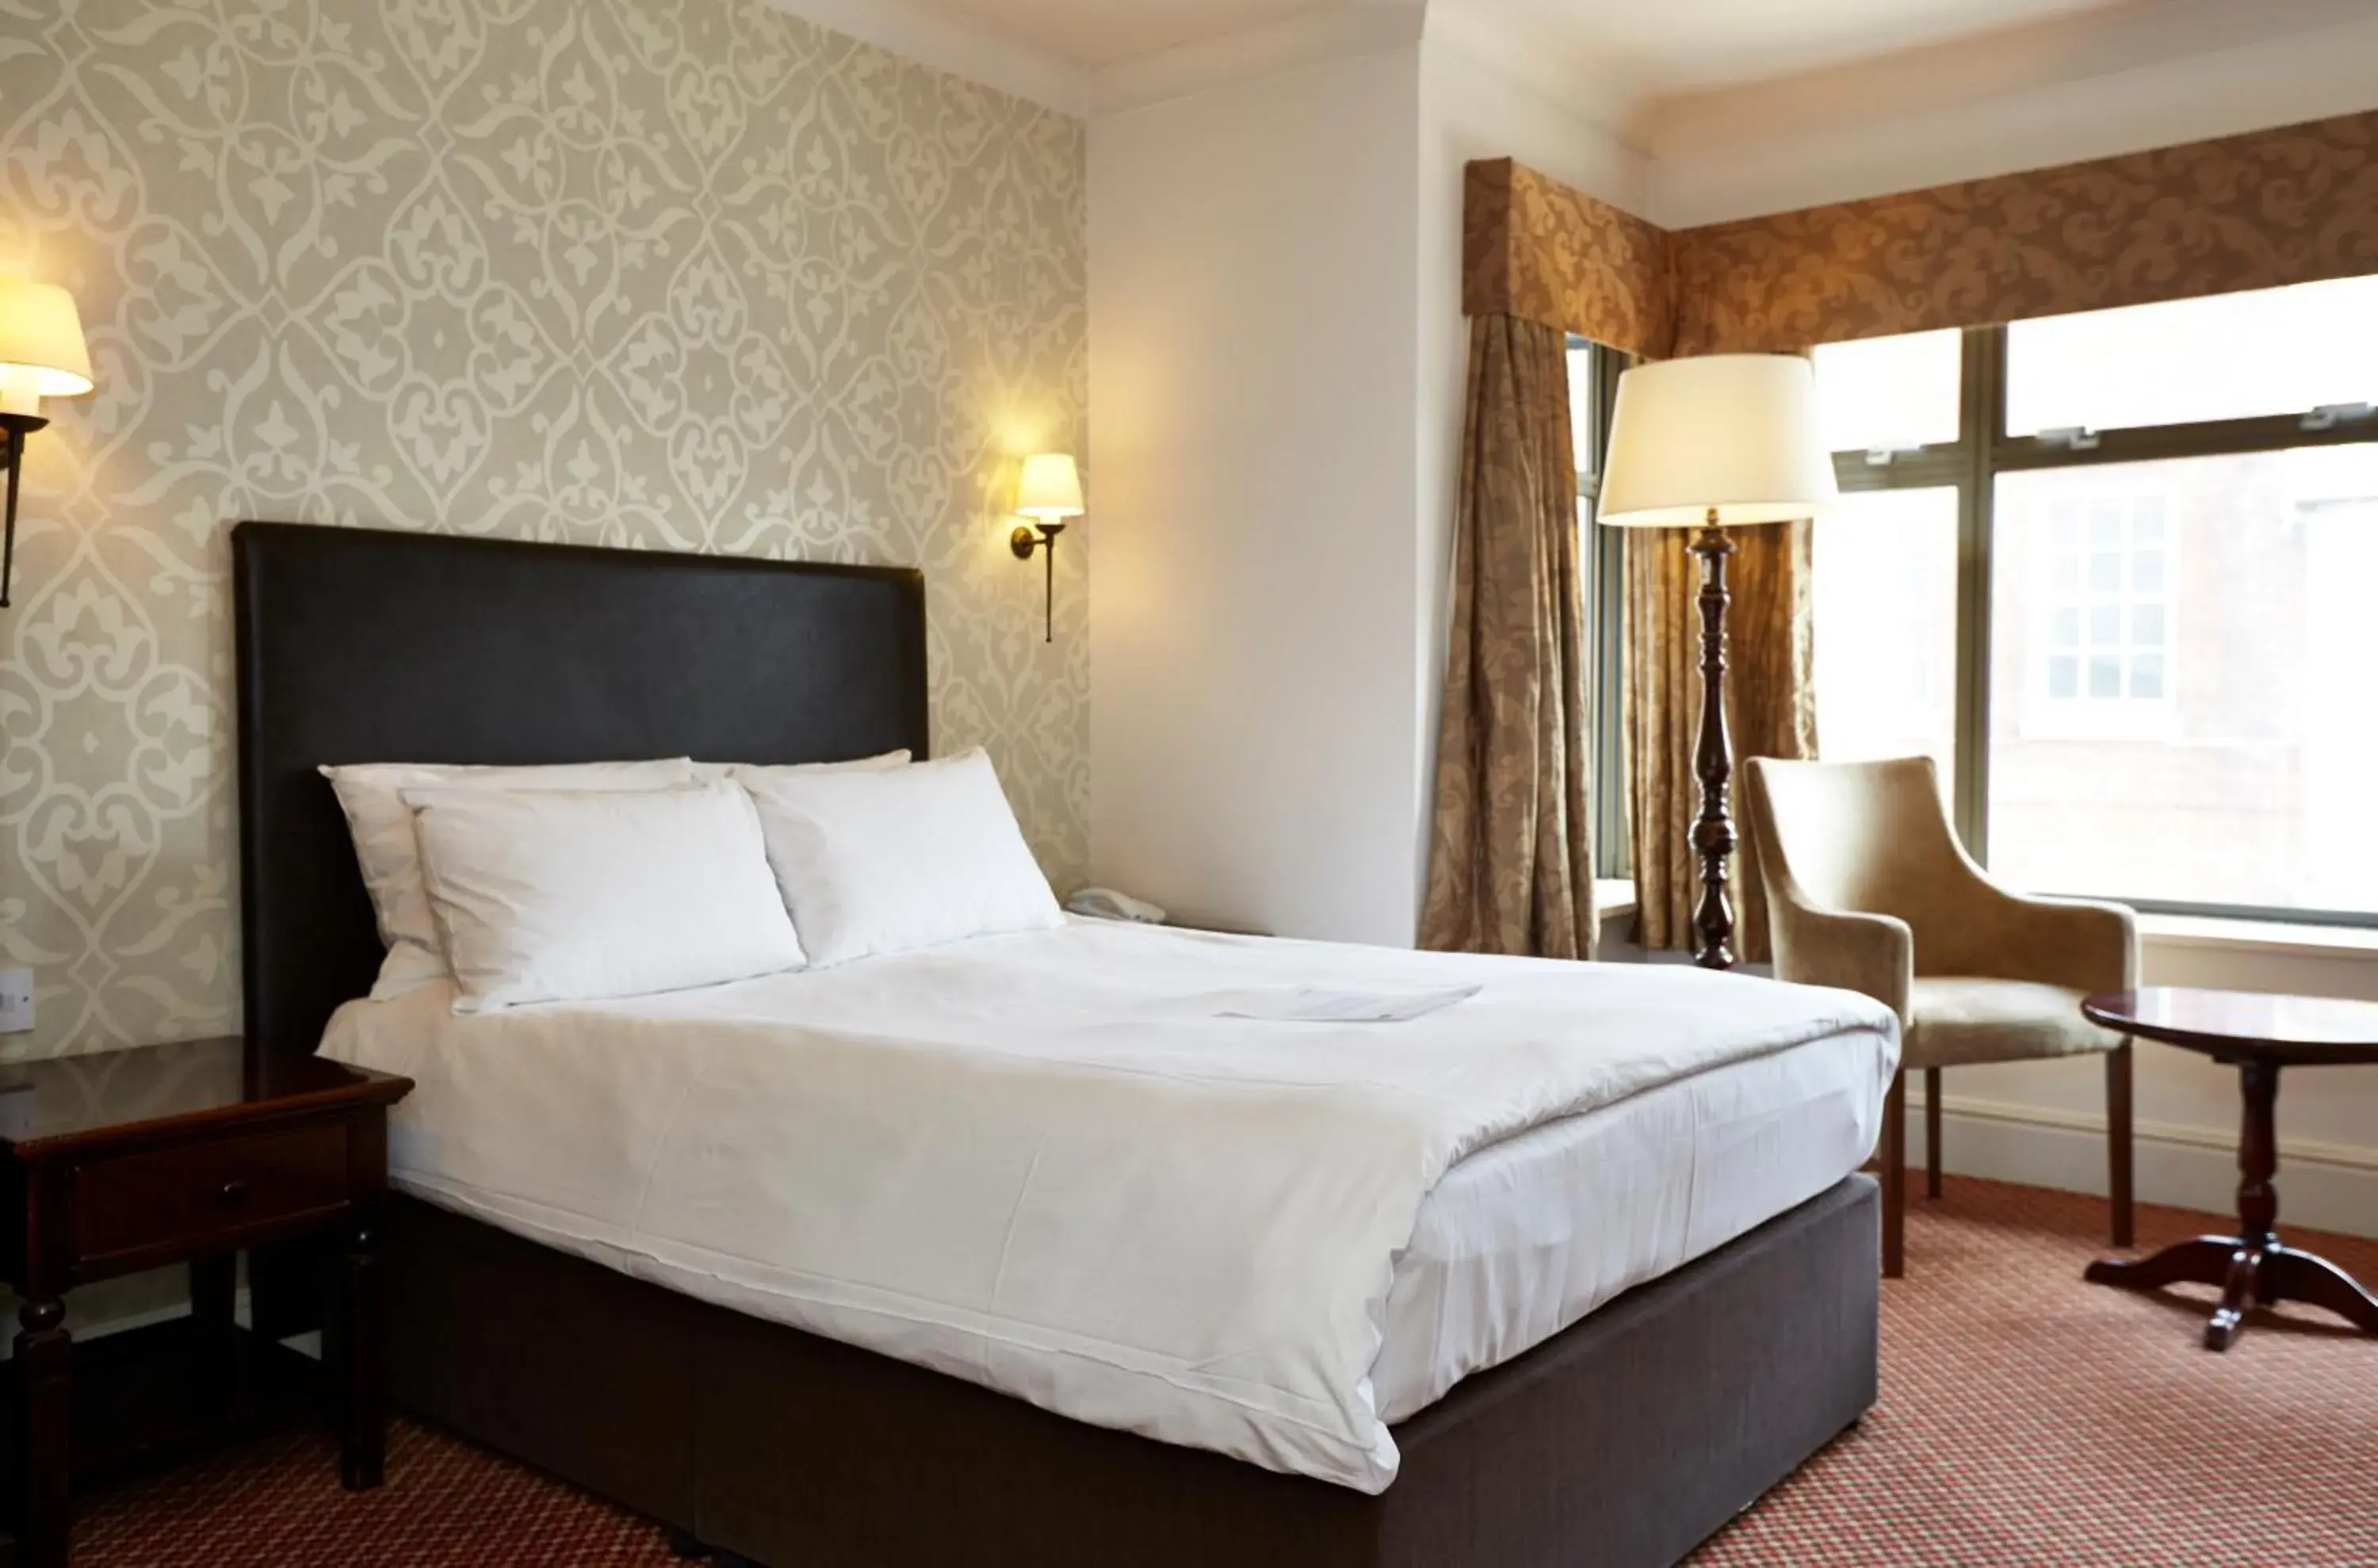 Bed in Ye Olde Talbot Hotel by Greene King Inns